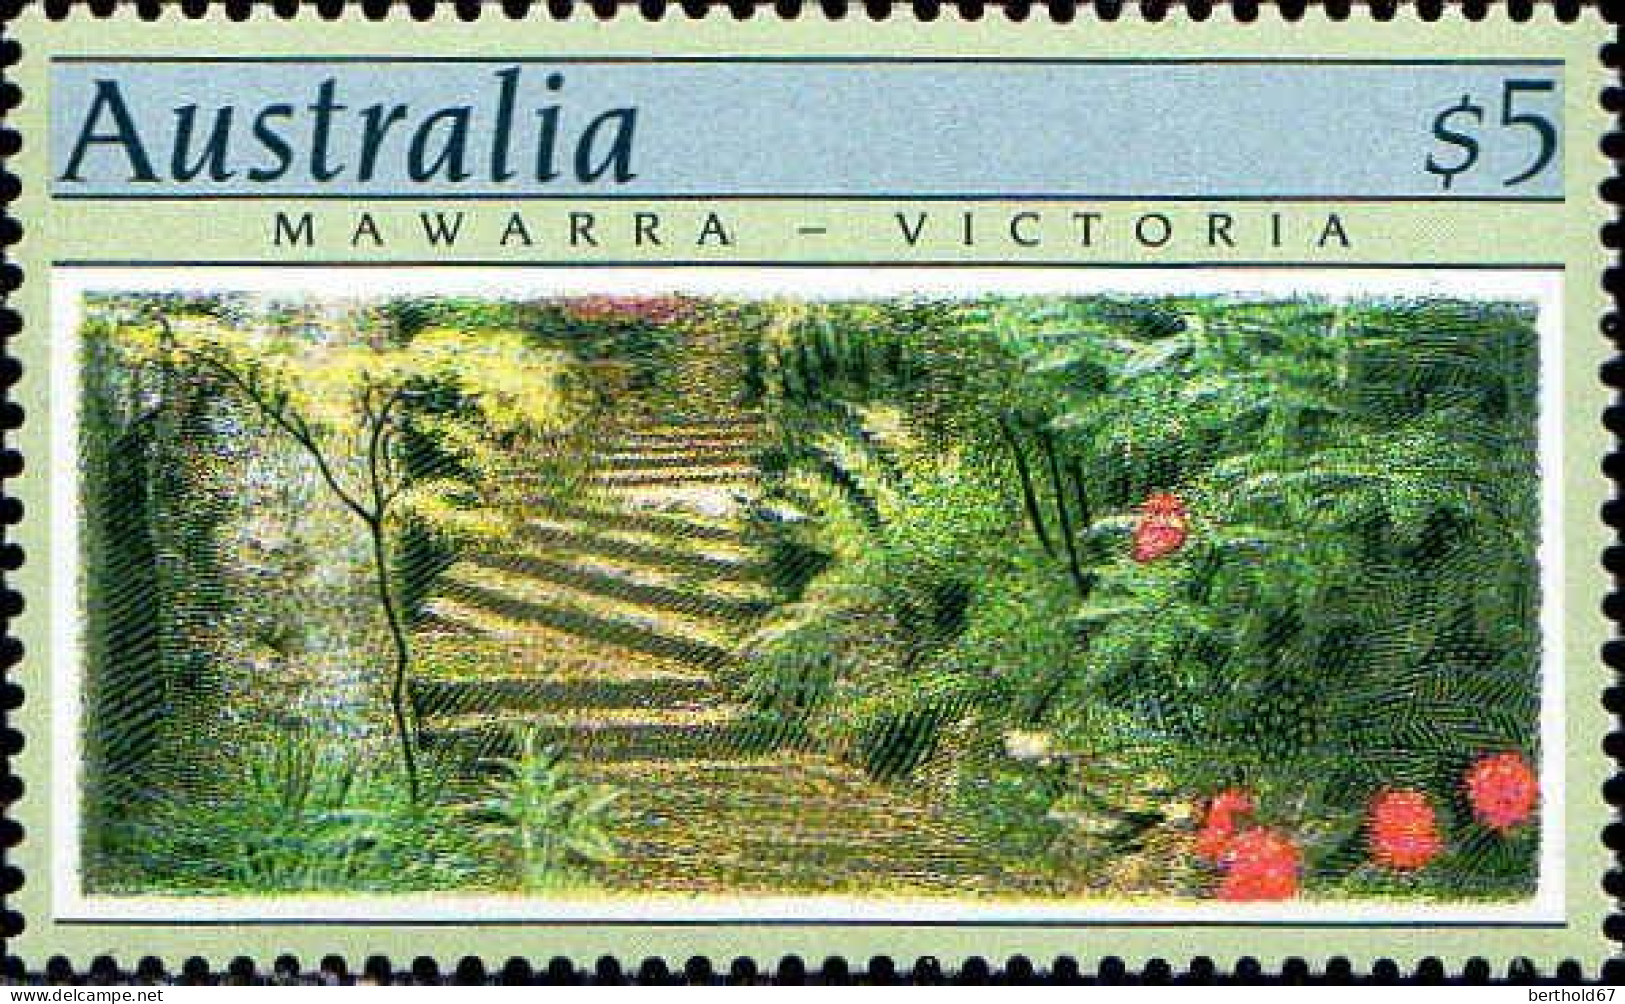 Australie Poste N** Yv:1128/1129 Jardins D'Australie 2.Serie - Ongebruikt